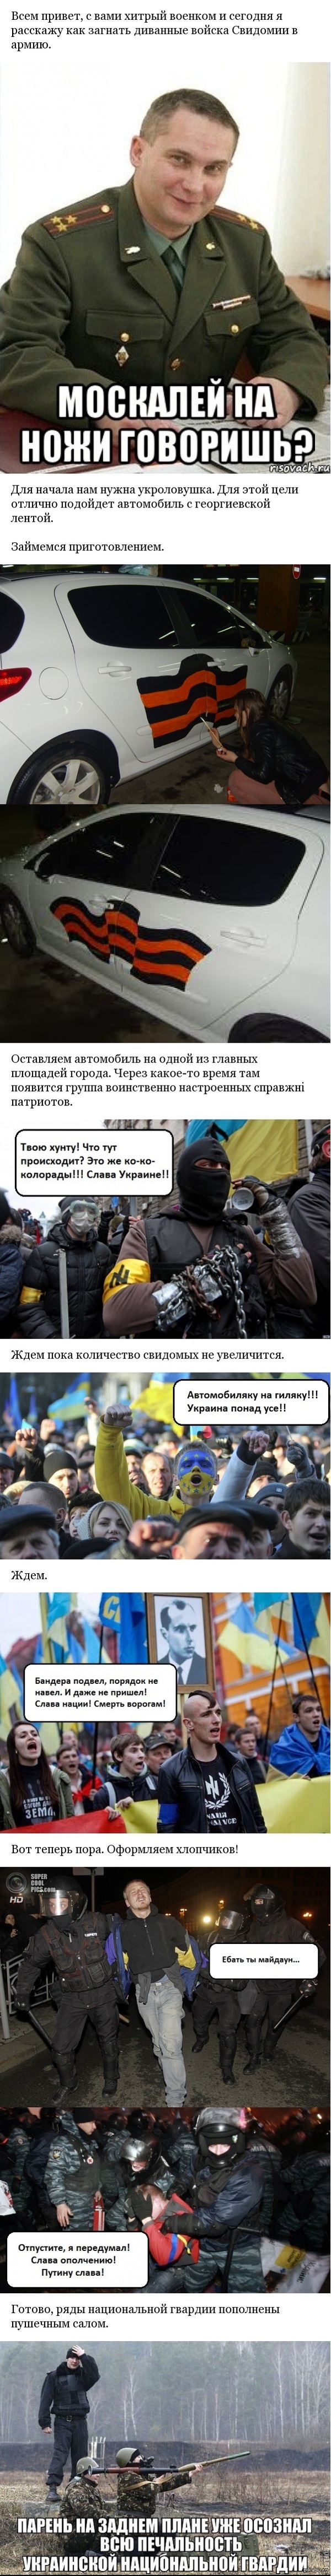         <a href="http://pikabu.ru/story/ideya_dlya_voenkomov_ukrainyi_2516076">http://pikabu.ru/story/_2516076</a>